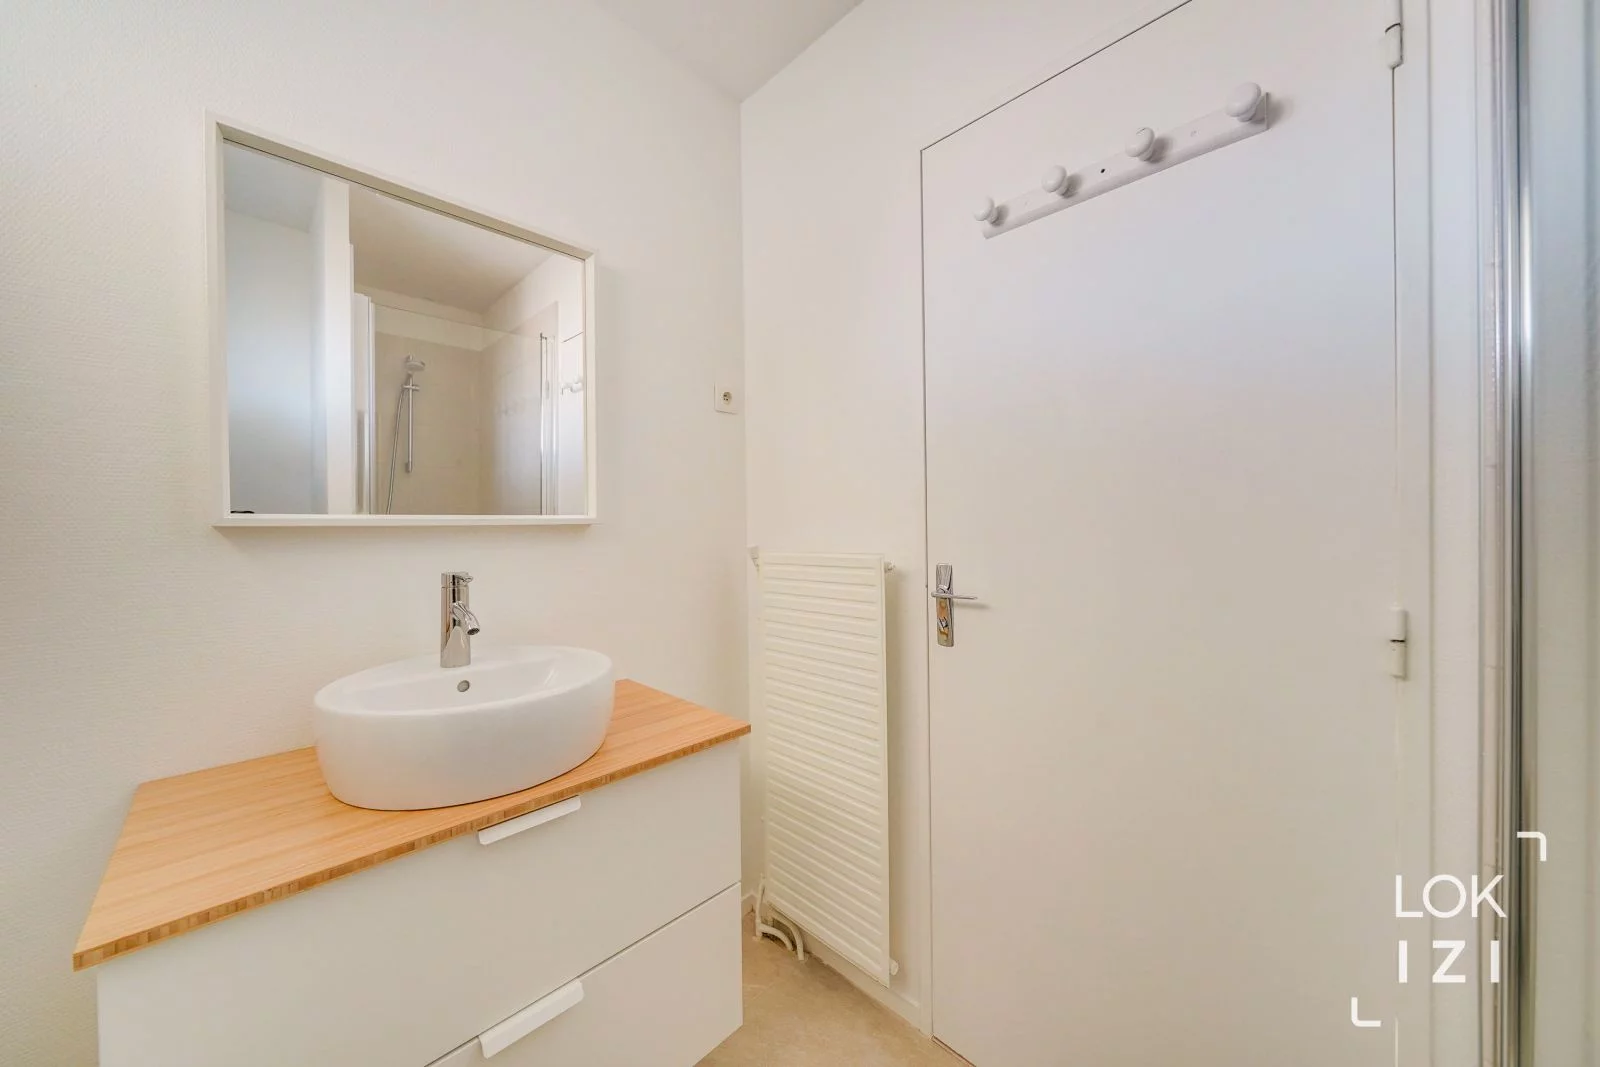 Location appartement meublé 3 pièces 84m² (Bordeaux - Caudéran)